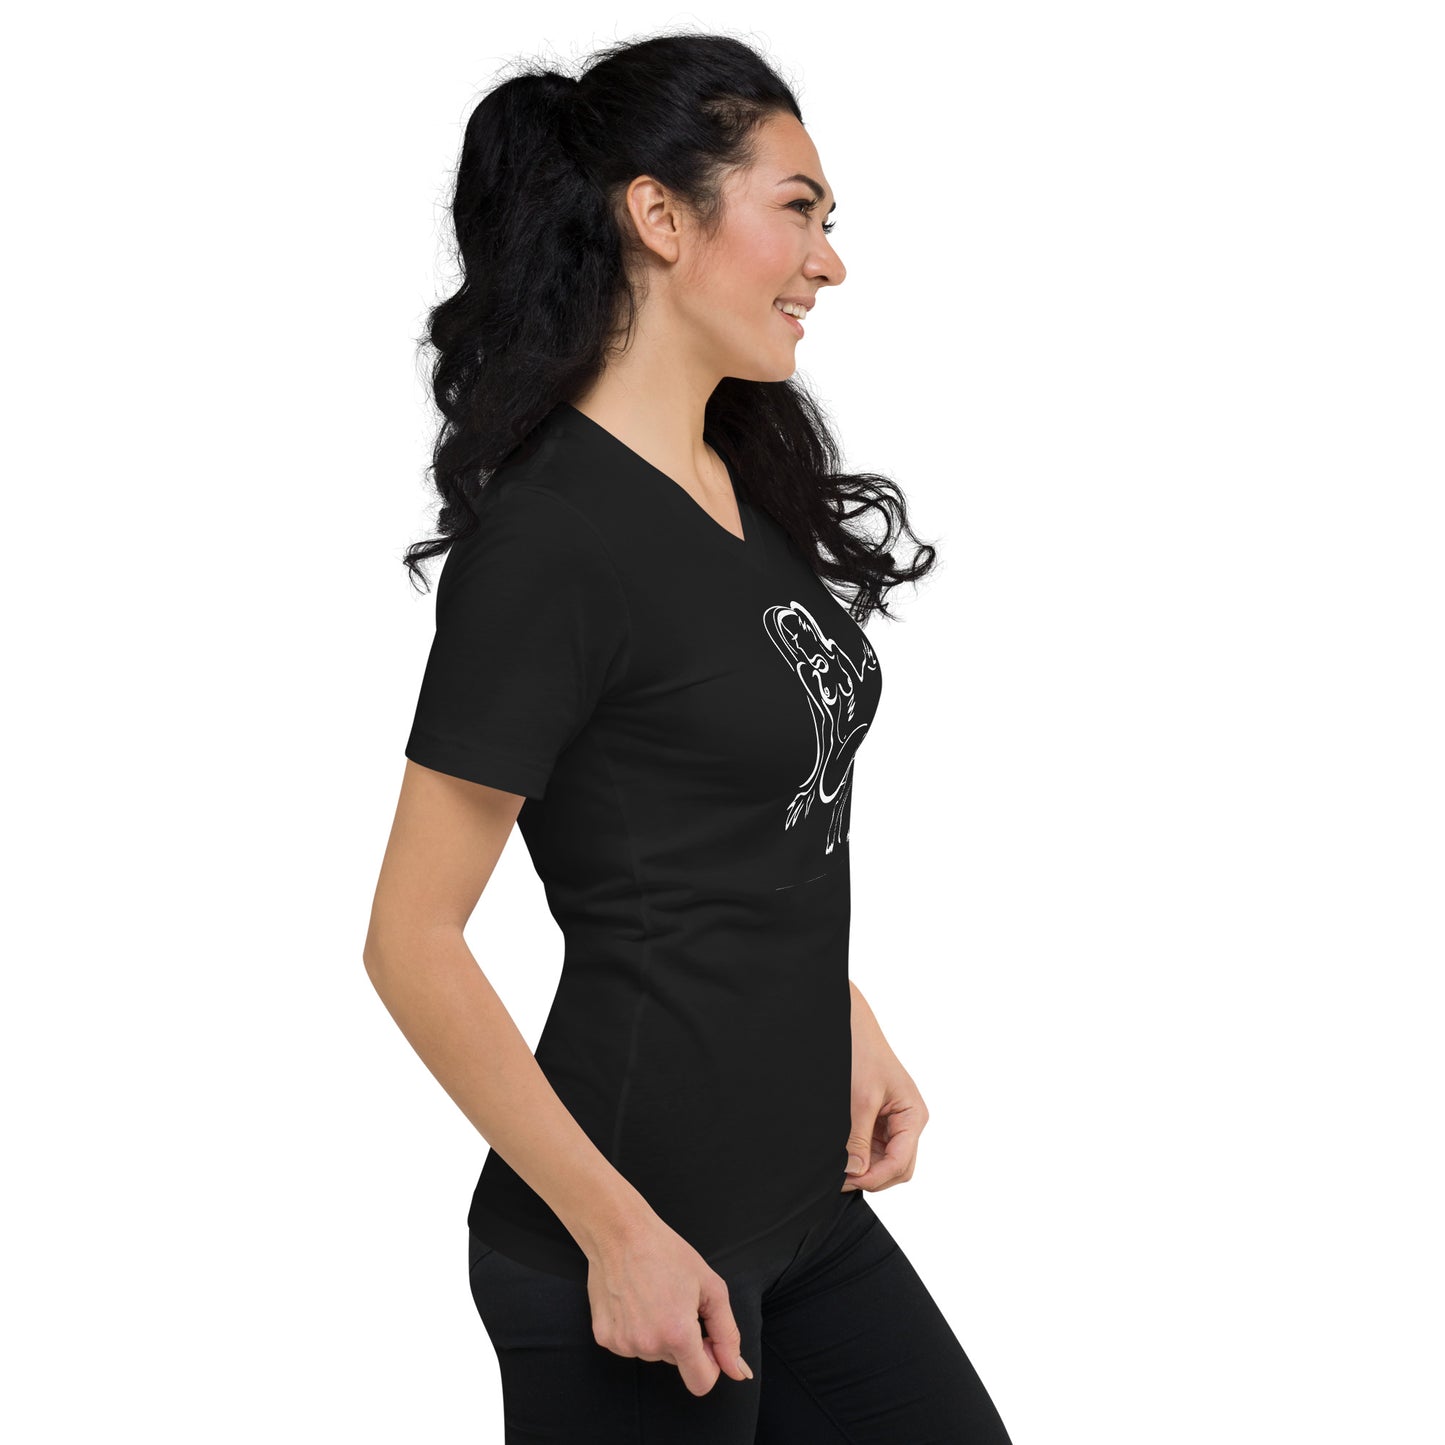 Santana Girl # 1 - Unisex Short Sleeve V-Neck T-Shirt